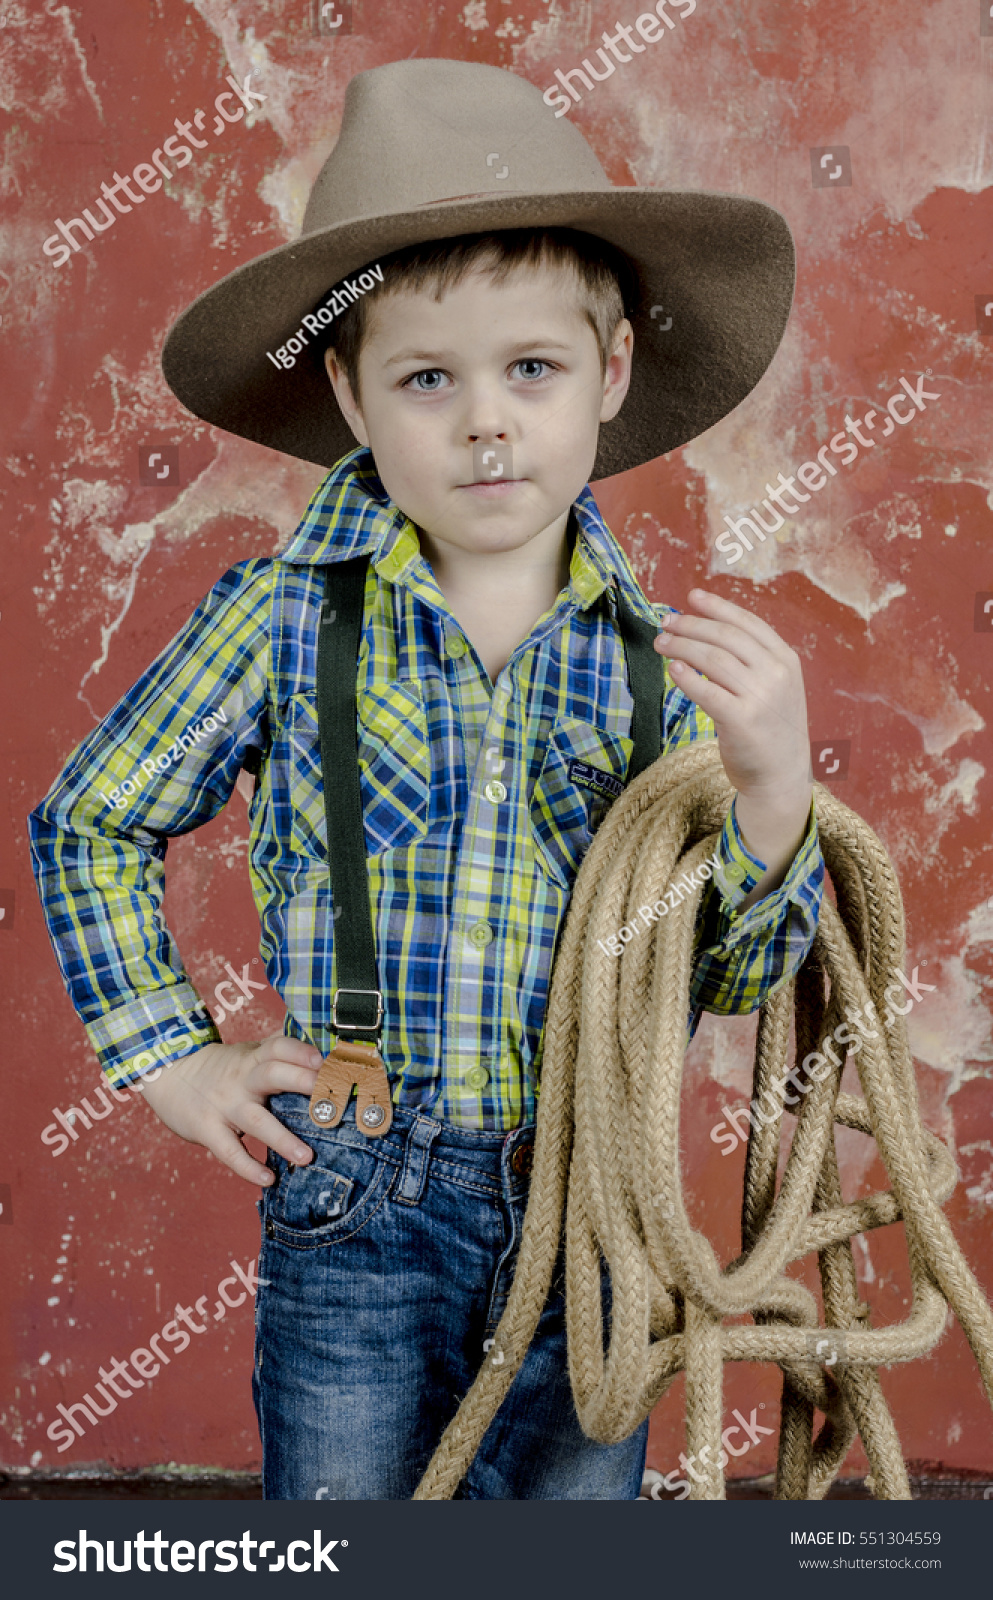 cowboy attire for baby boy